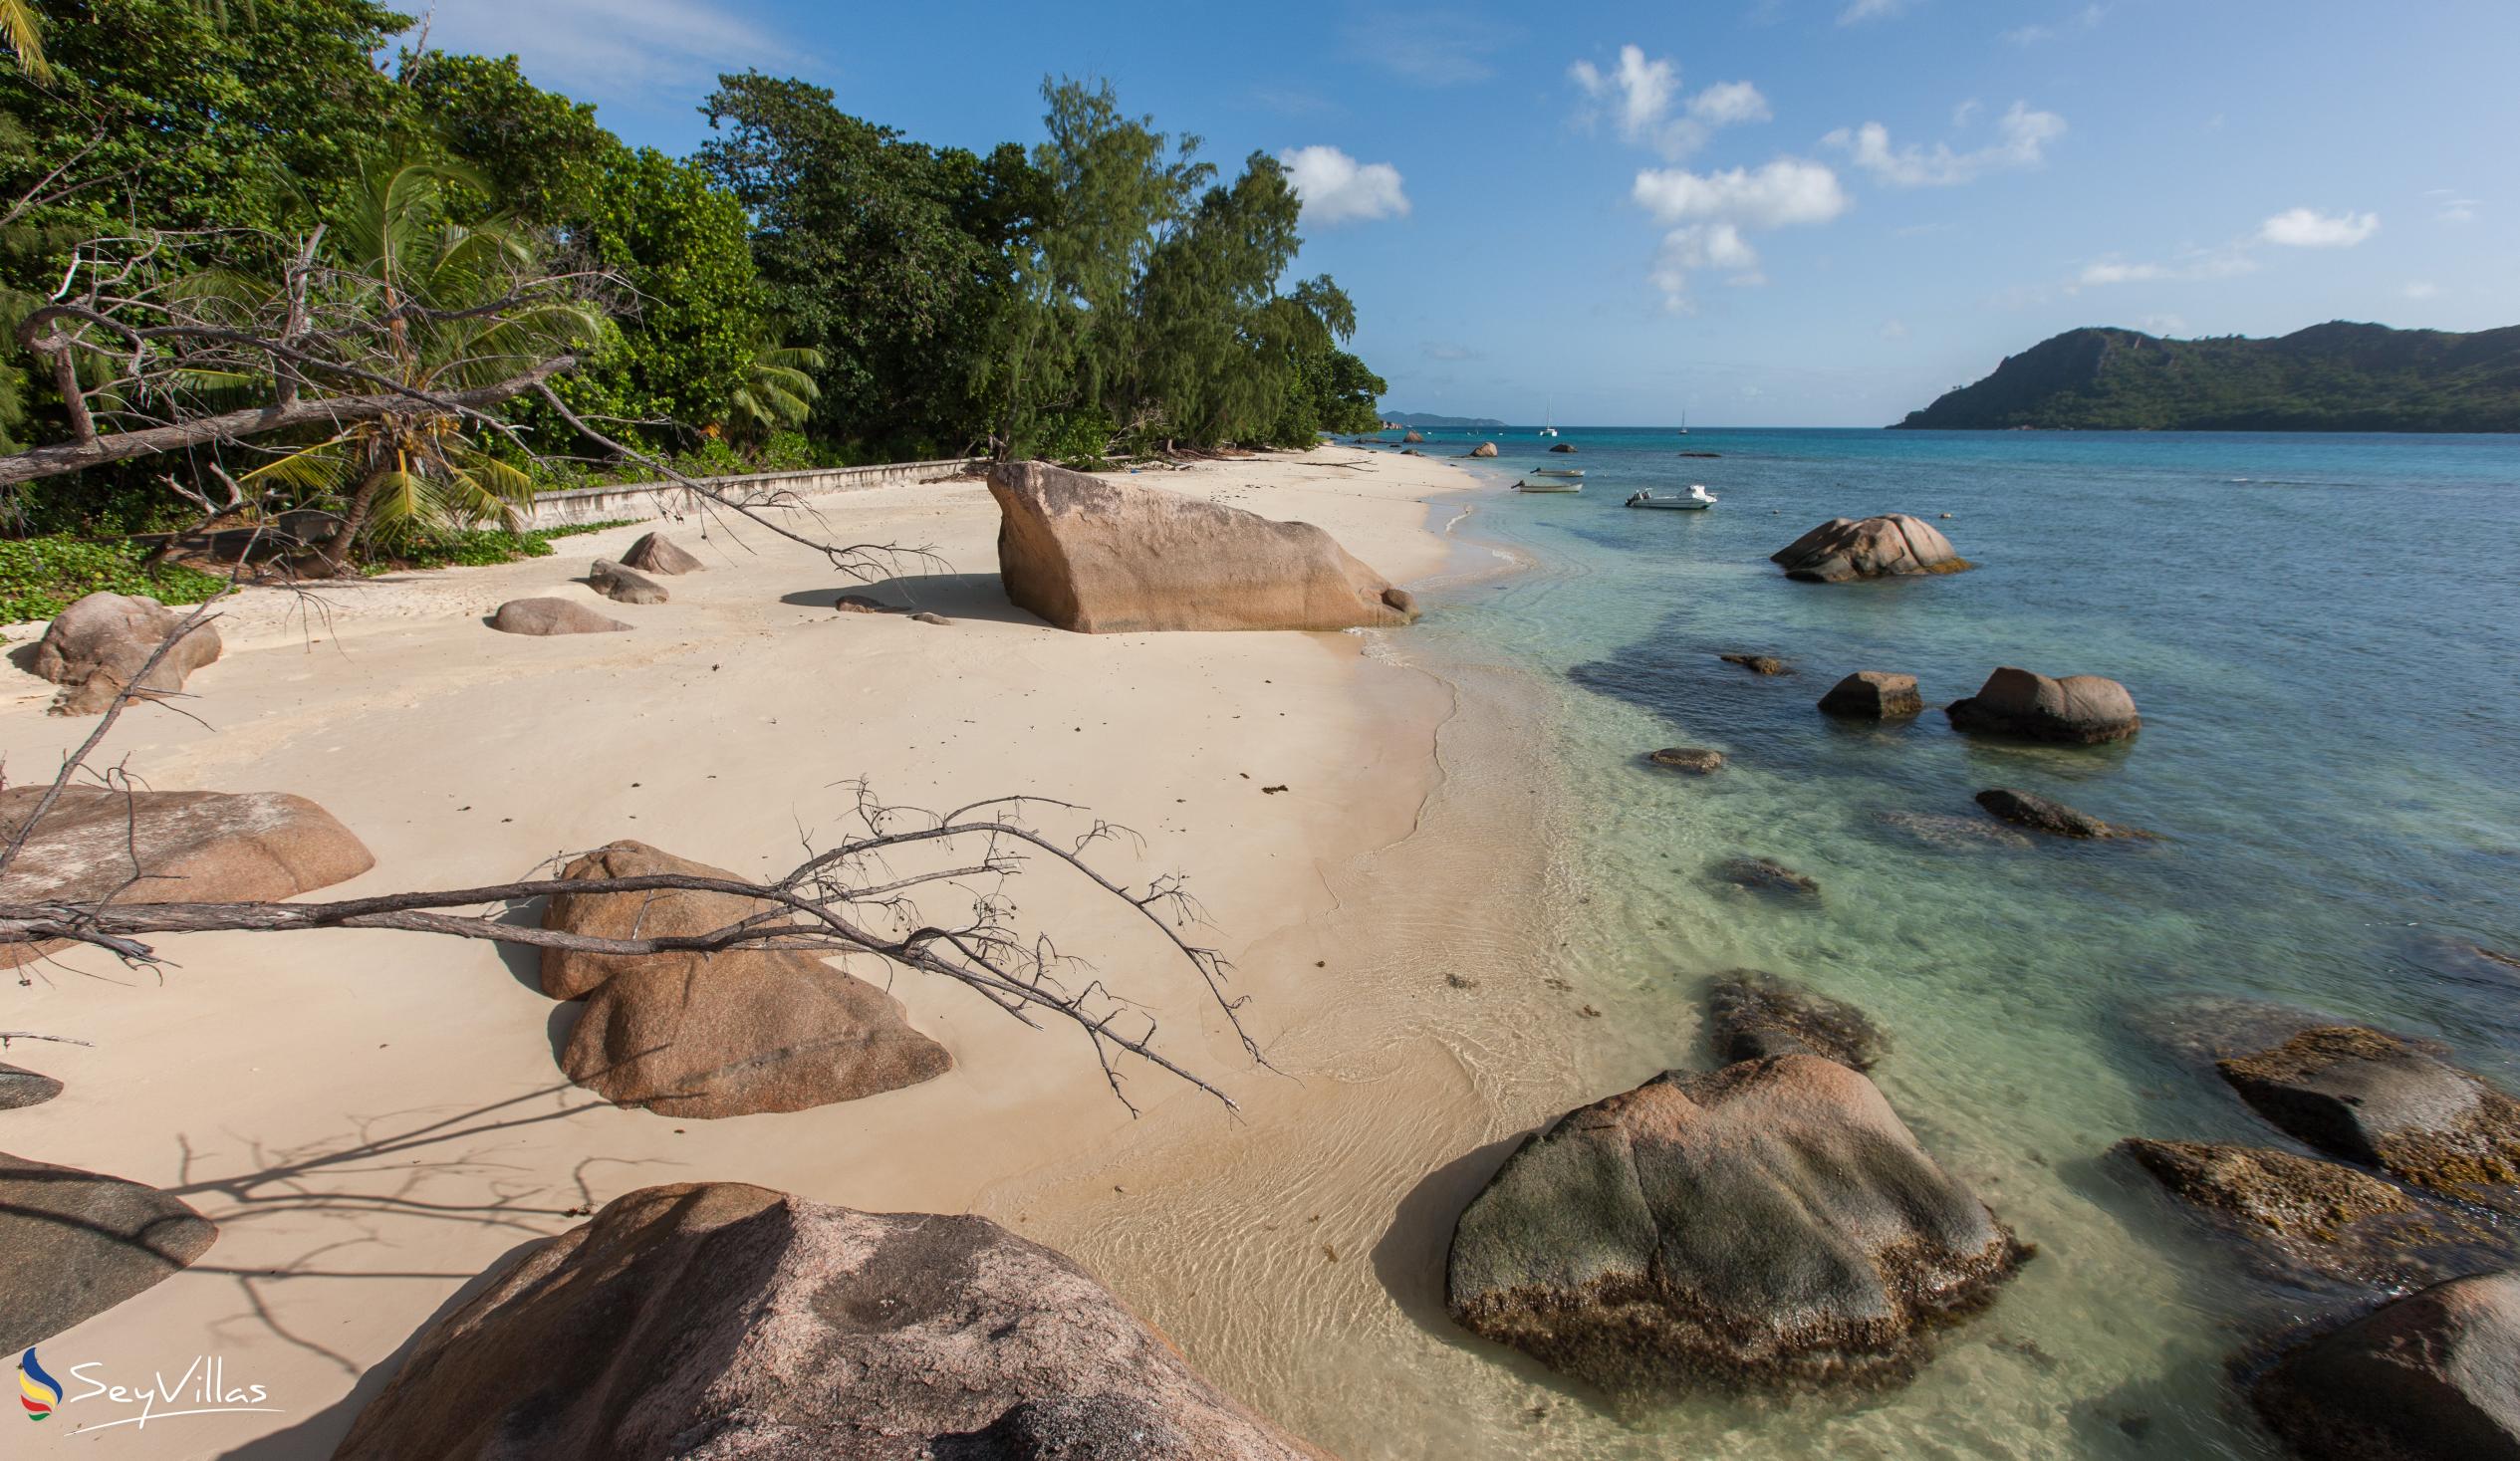 Foto 9: La Casa Grande - Location - Praslin (Seychelles)